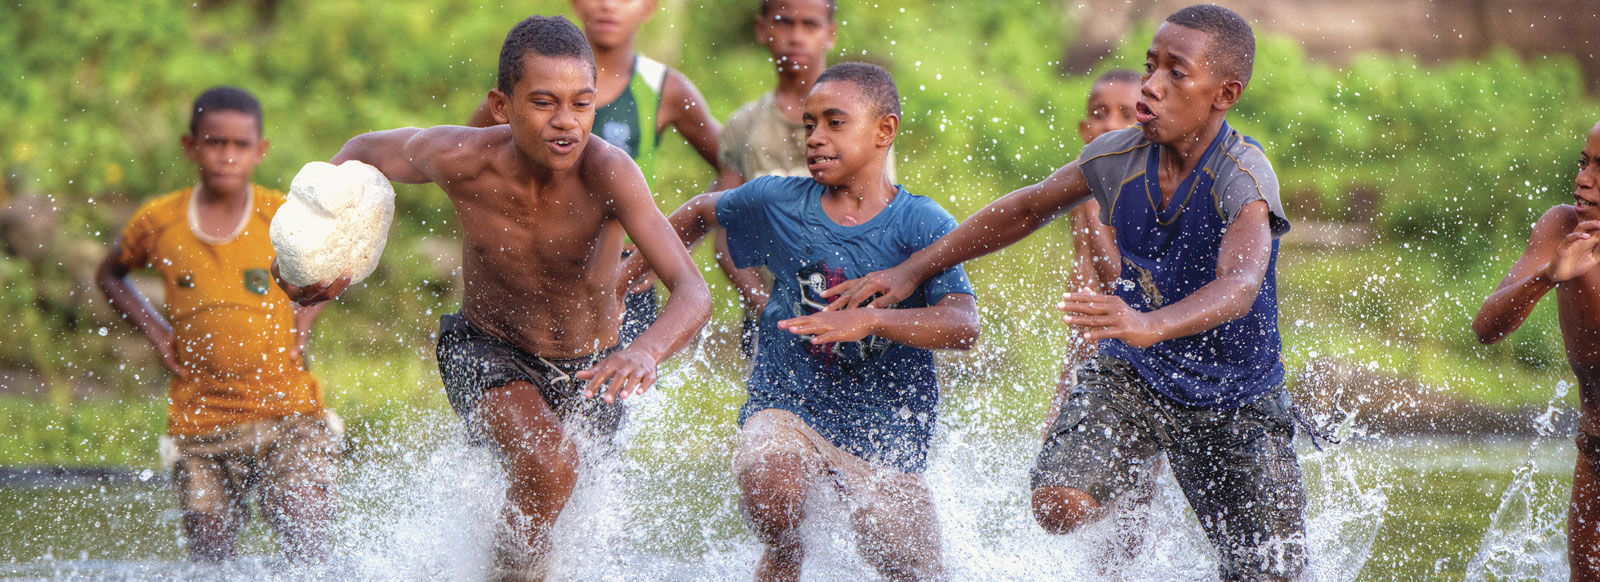 FT Fiji Kinder 1600